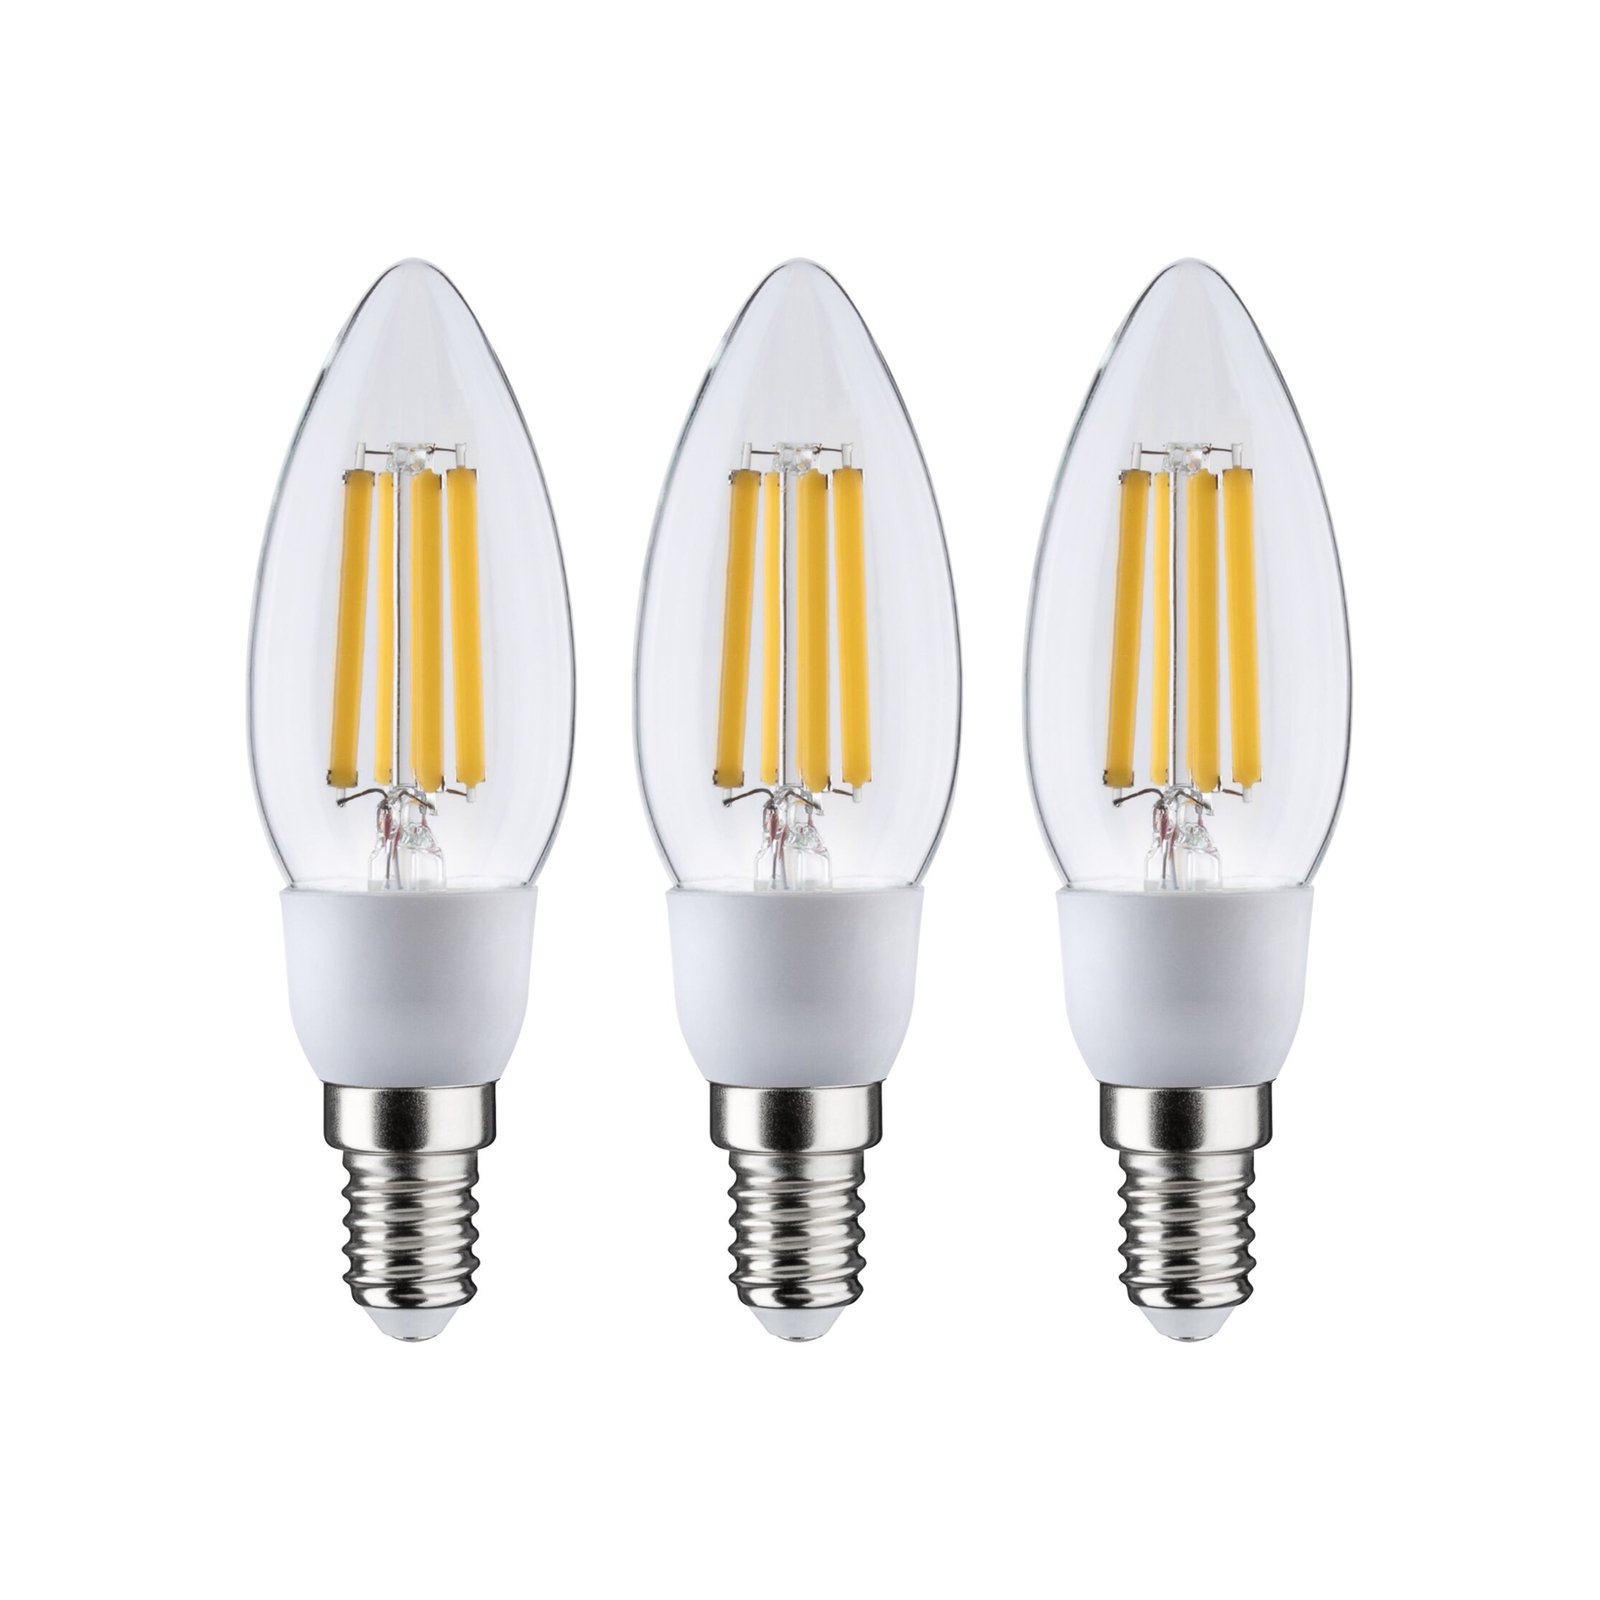 Paulmann Eco-Line LED svíčka E14 2,5W 525lm 830 3